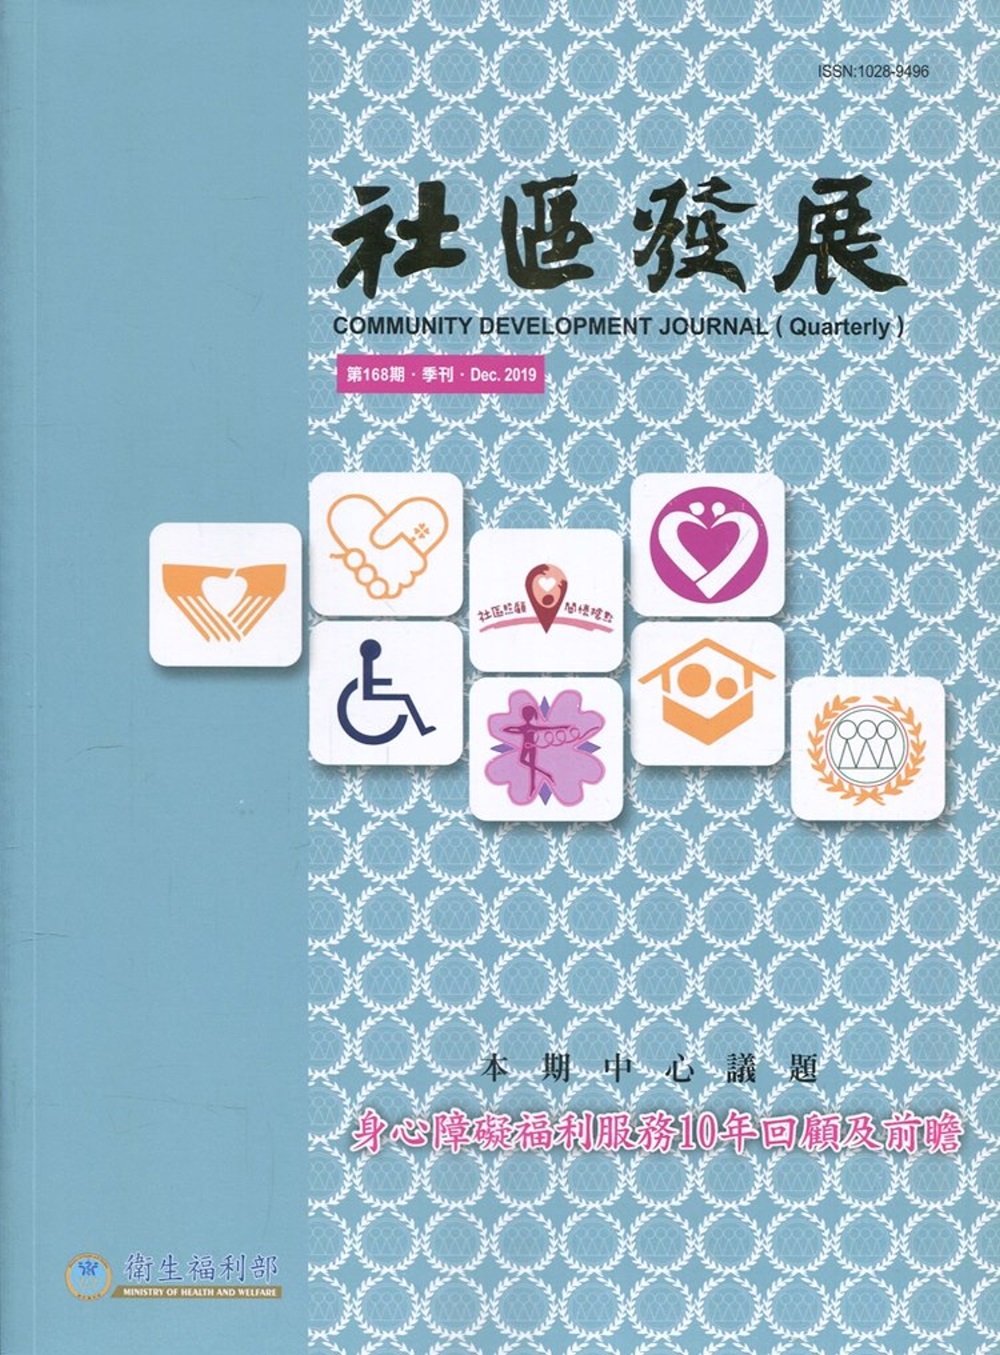 社區發展季刊168期(2019/12)：身心障礙福利服務10年回顧及前瞻